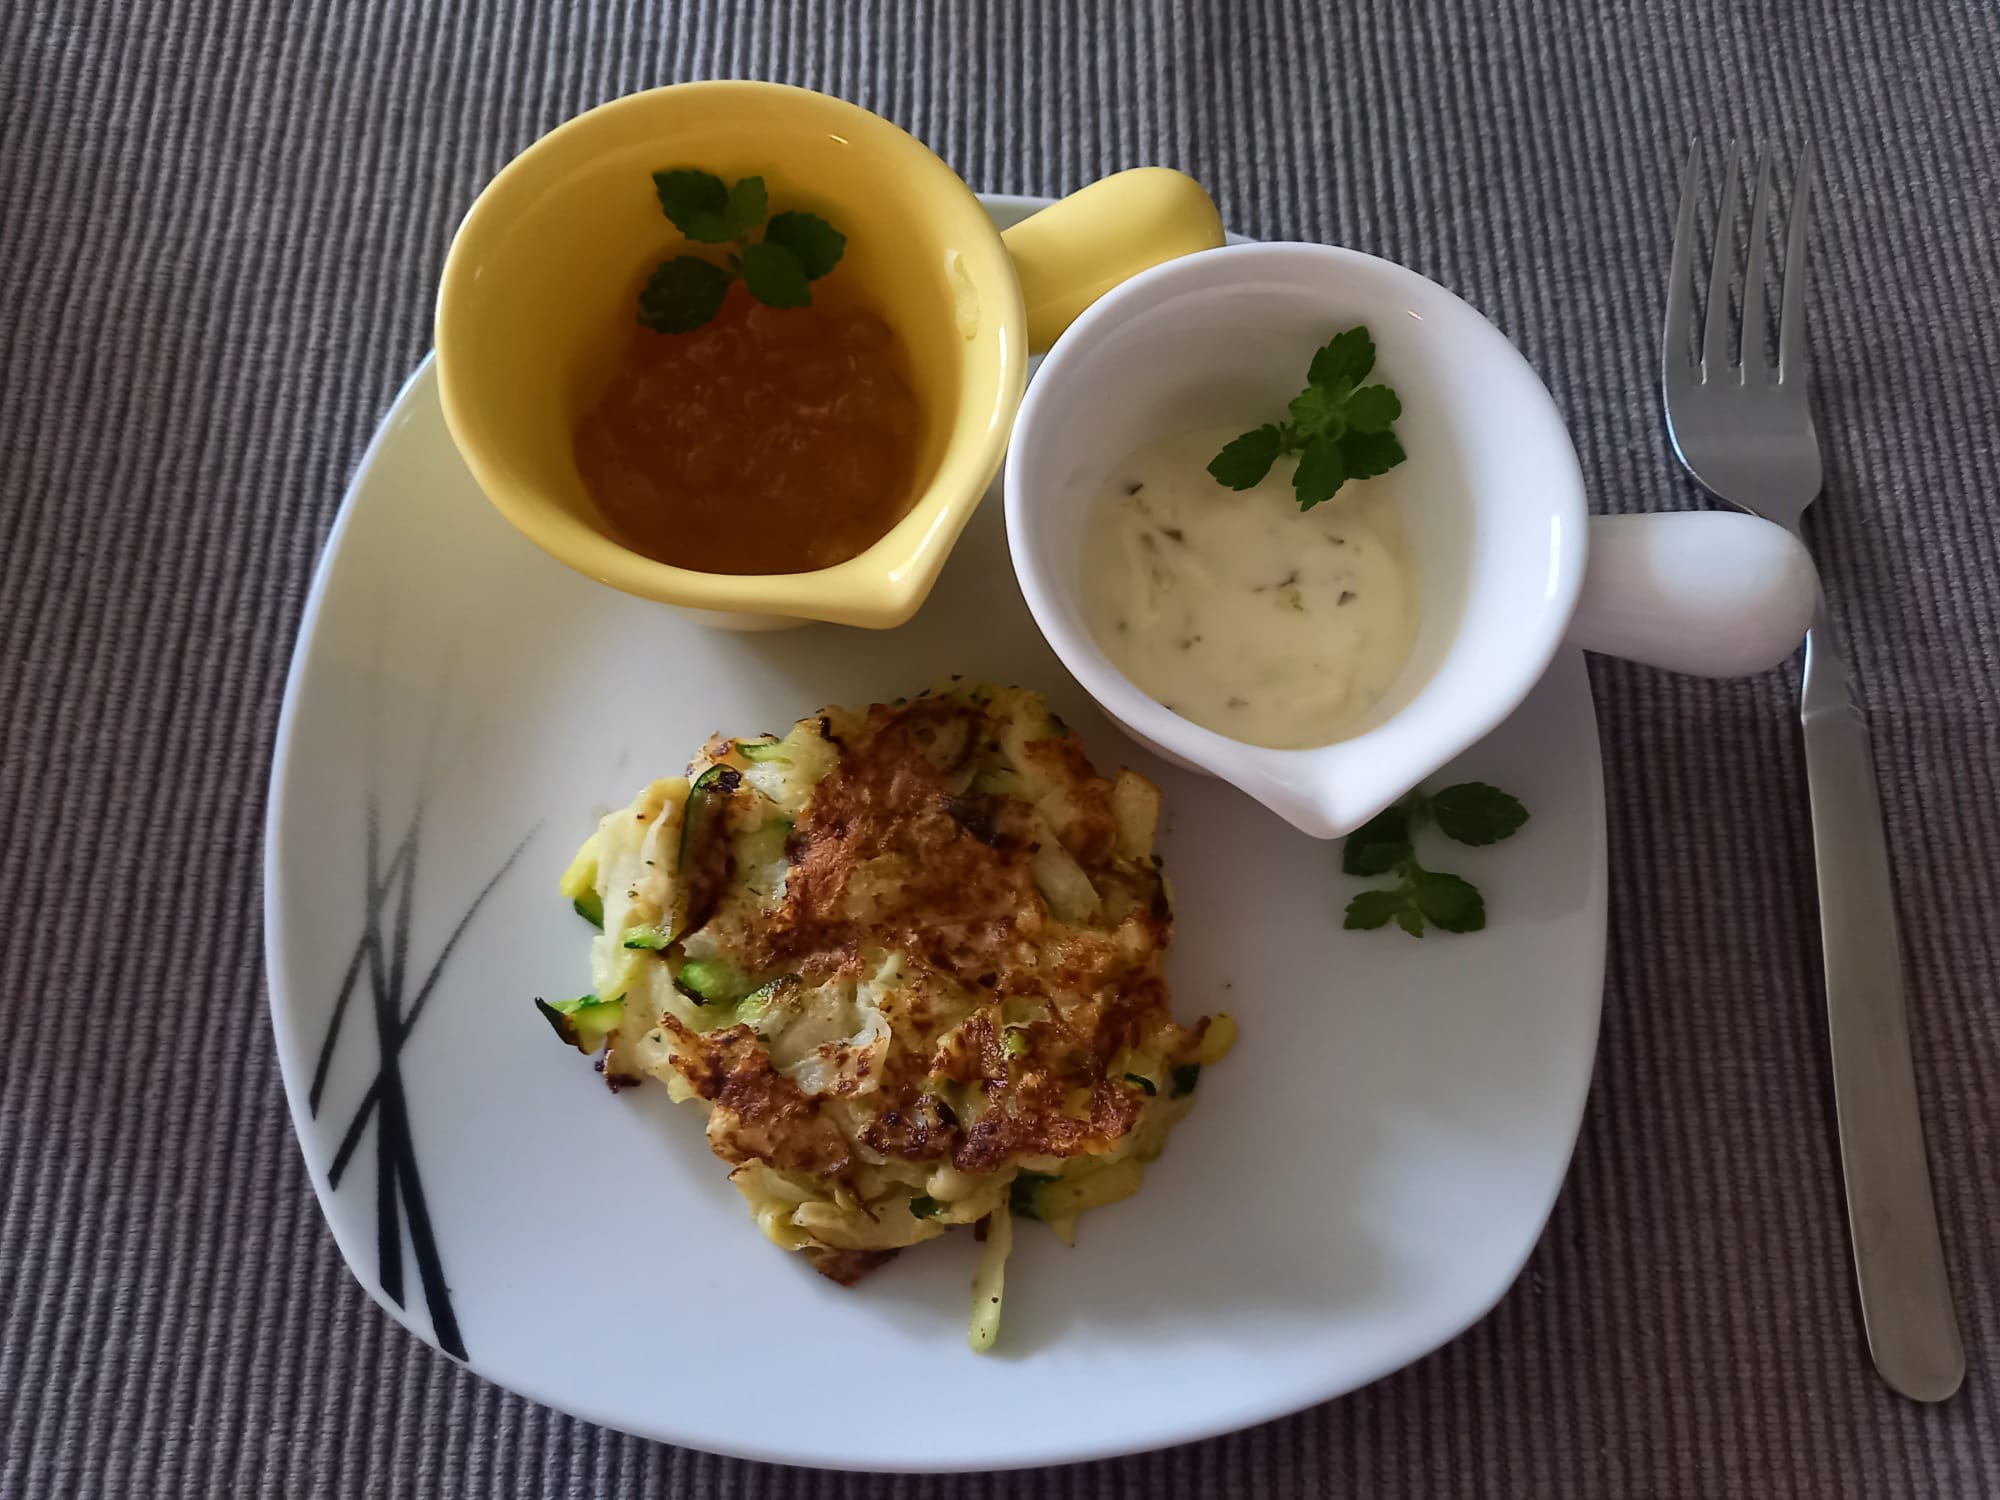 Zucchini-Kohlrabi-Rösti mit Joghurt-Dip und scharfem Marillen-Dip